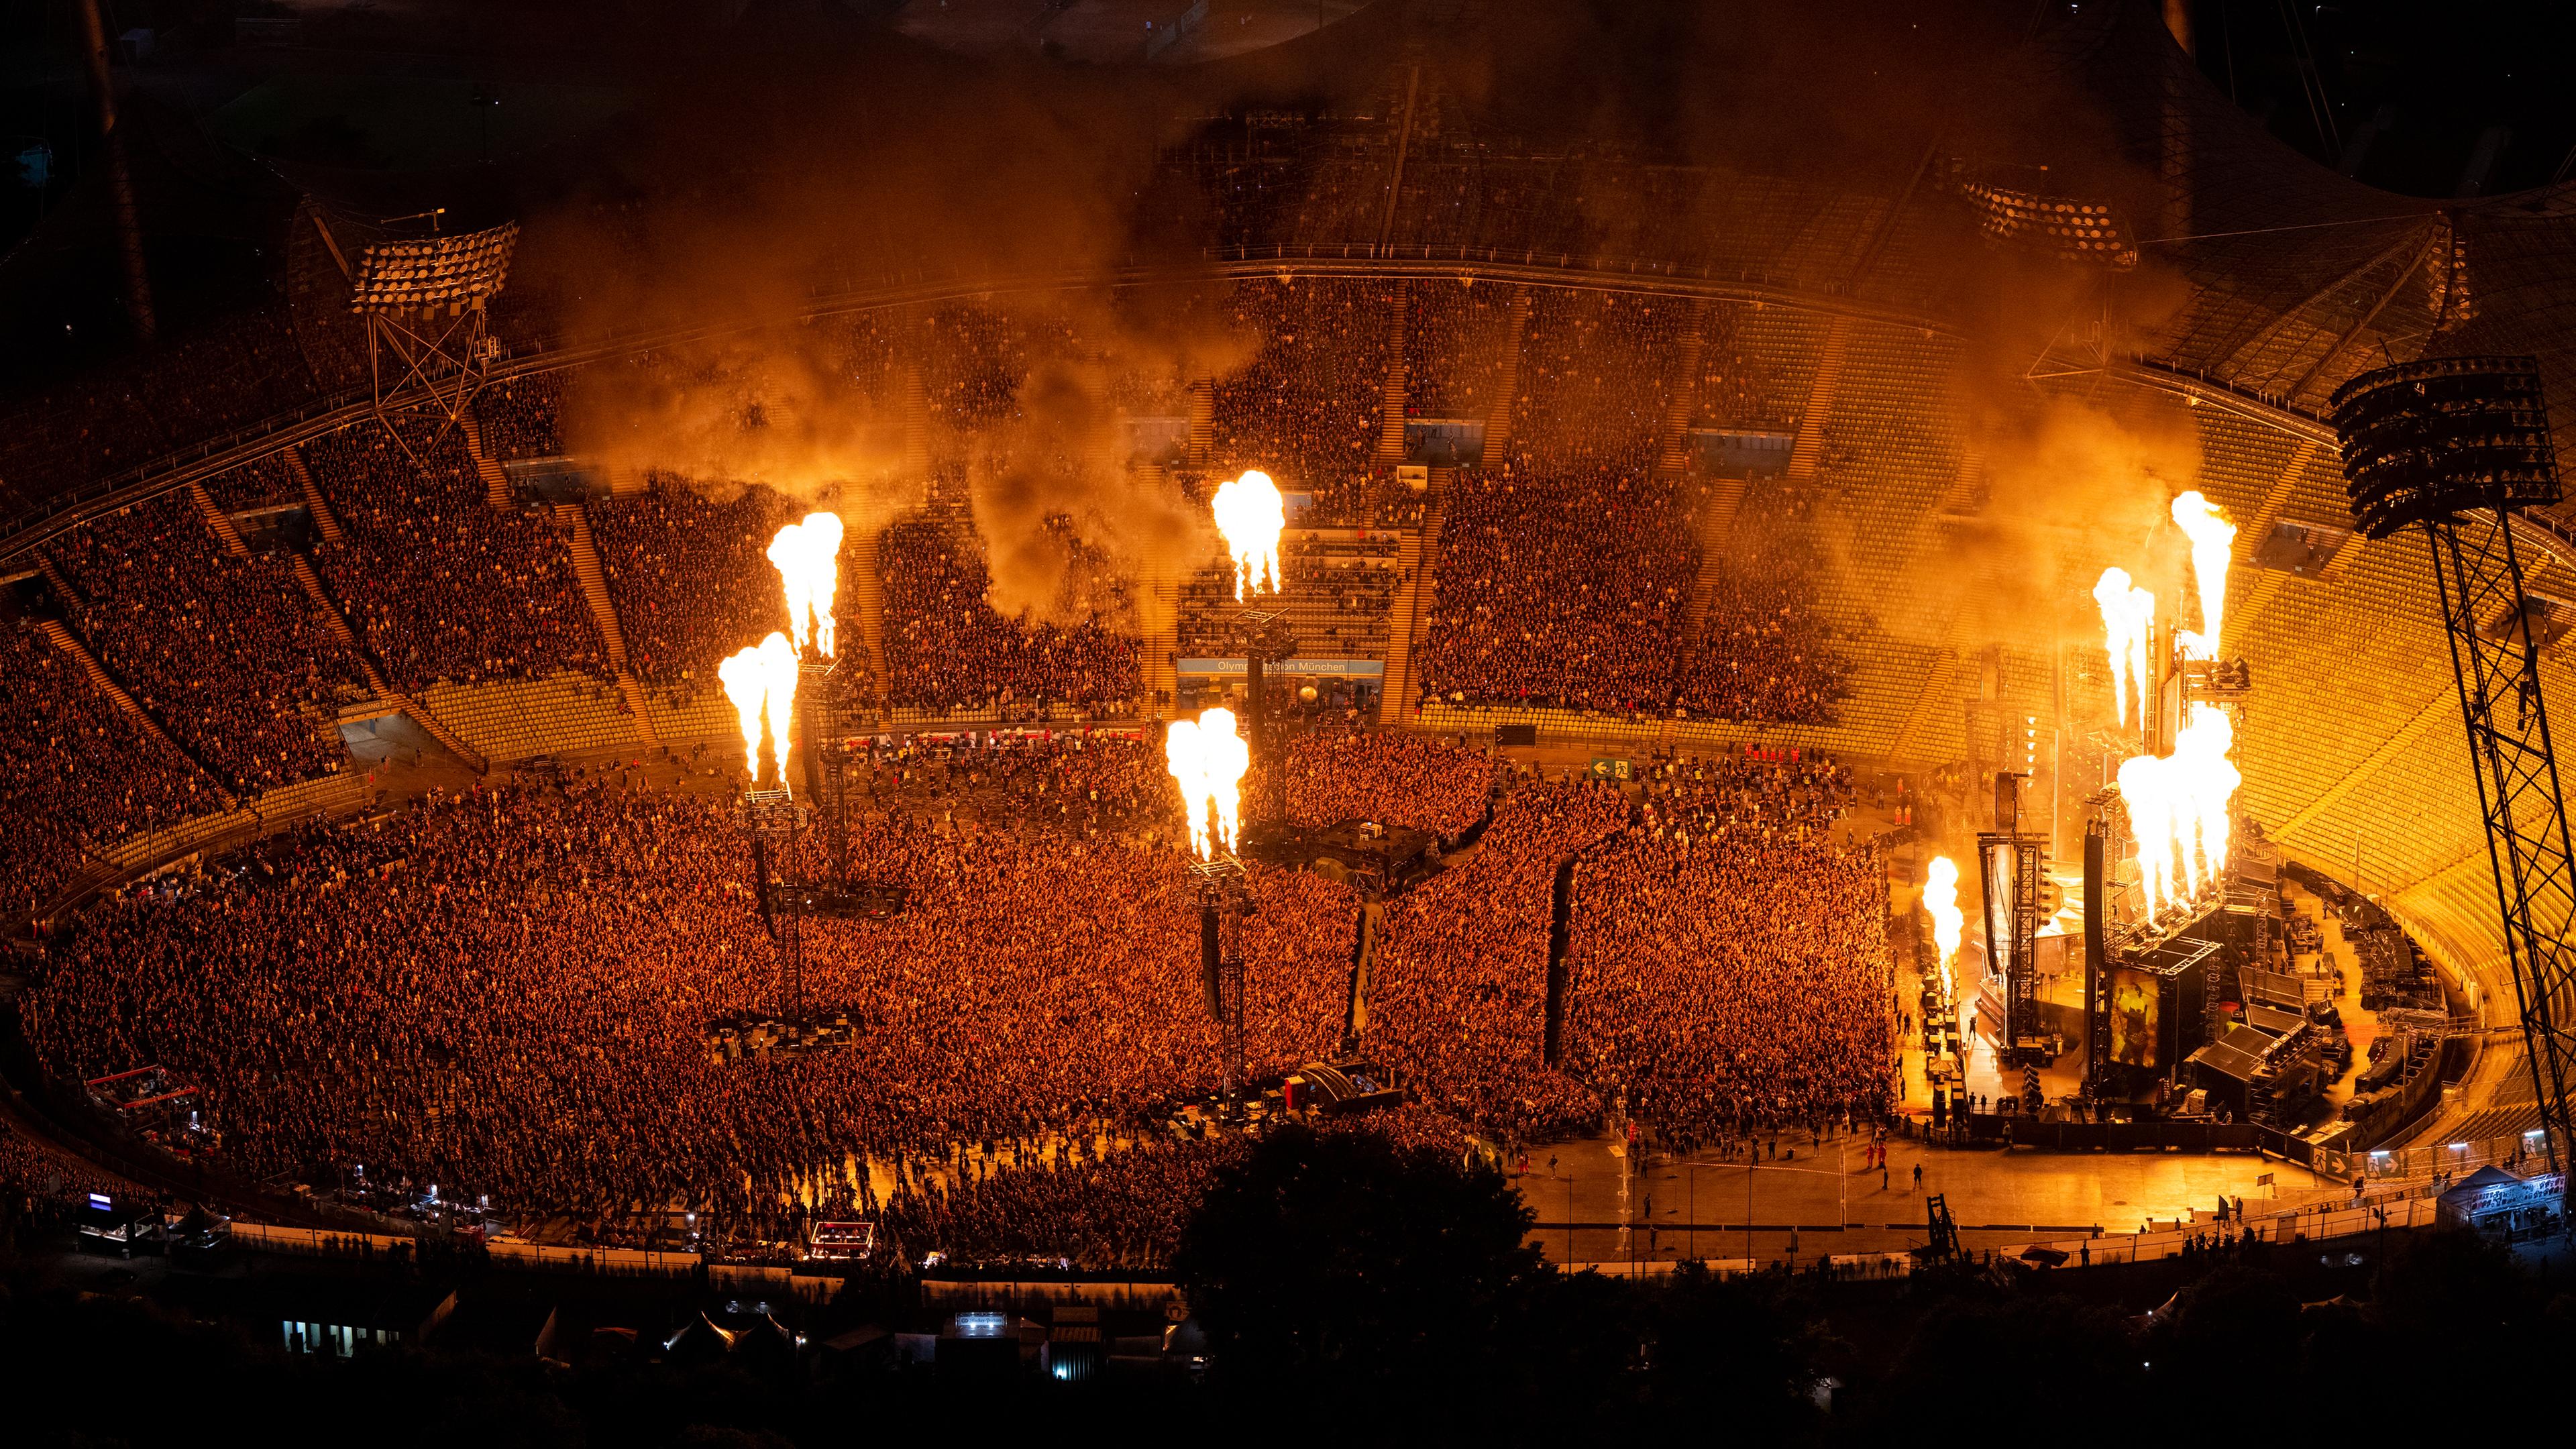 Tausenden Menschen sind von oben vor der Bühne im Olympiastation zu sehen, erleuchtet durch Flammenwerfer im Stadion.